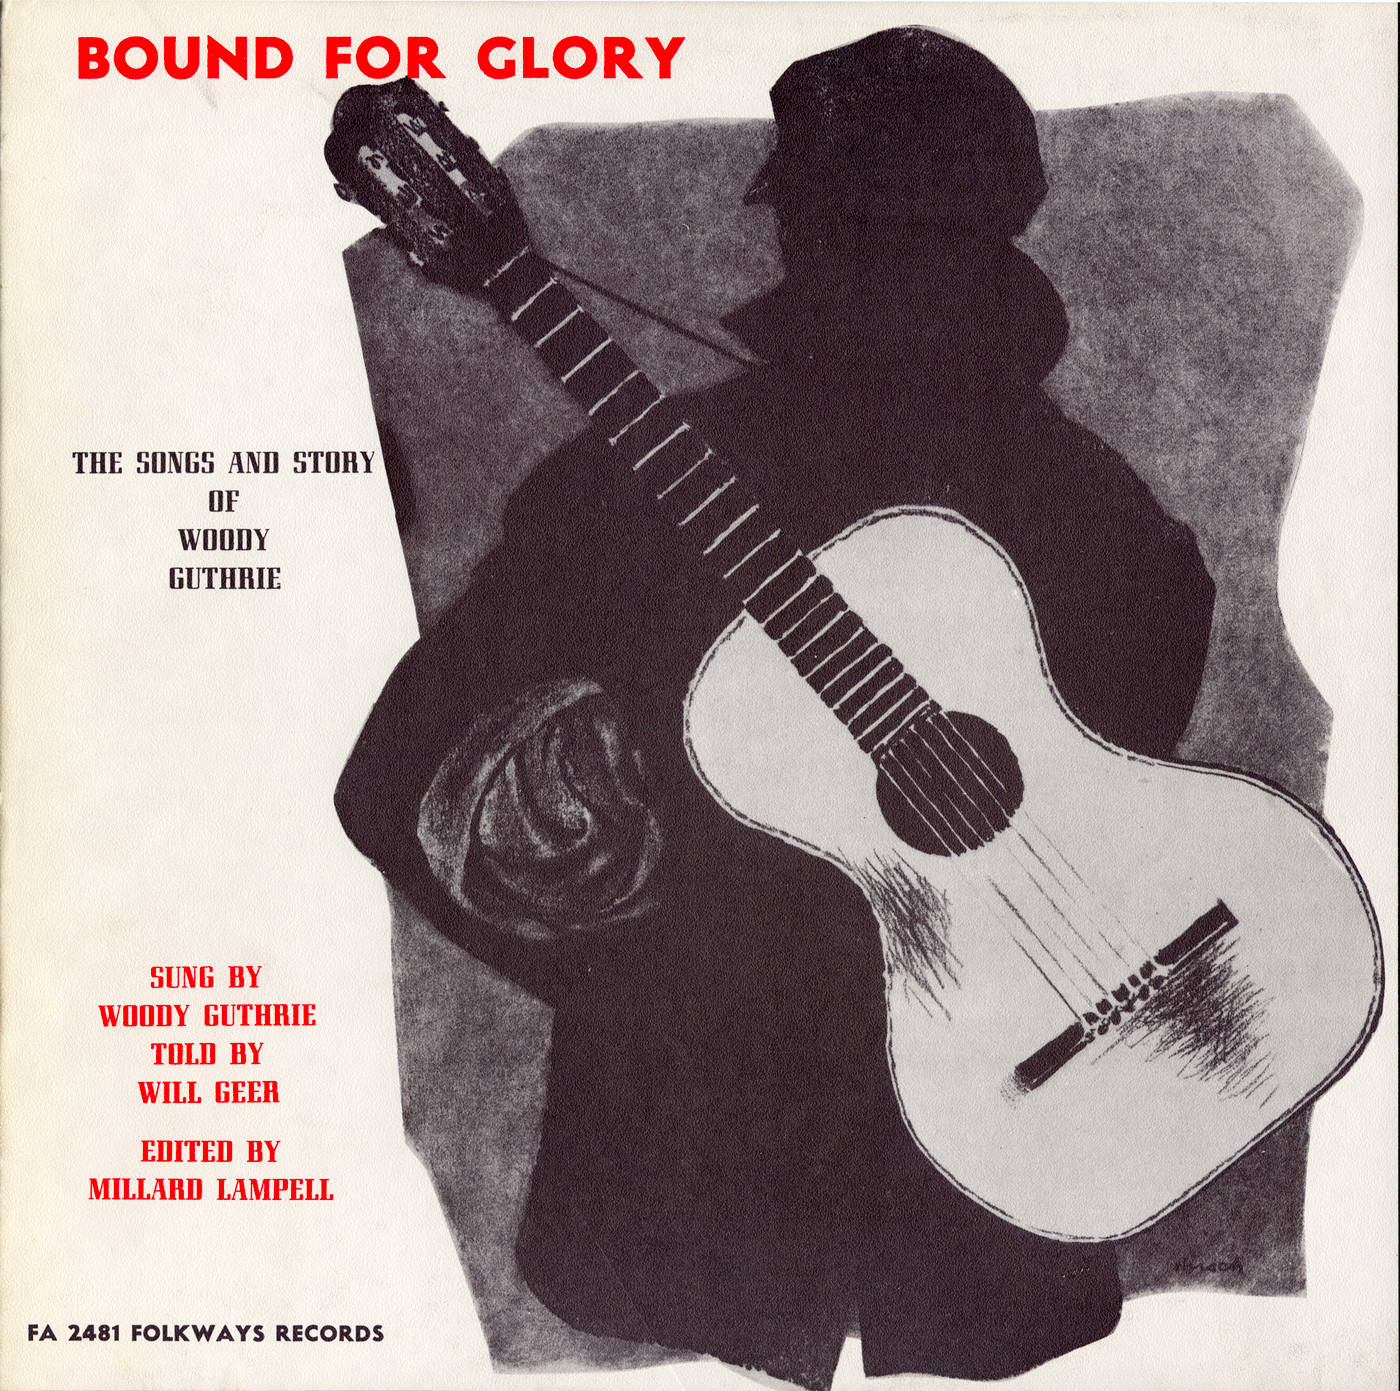 Boundfor Glory Woody Guthrie (gebunden Für Ruhm Woody Guthrie) Wallpaper